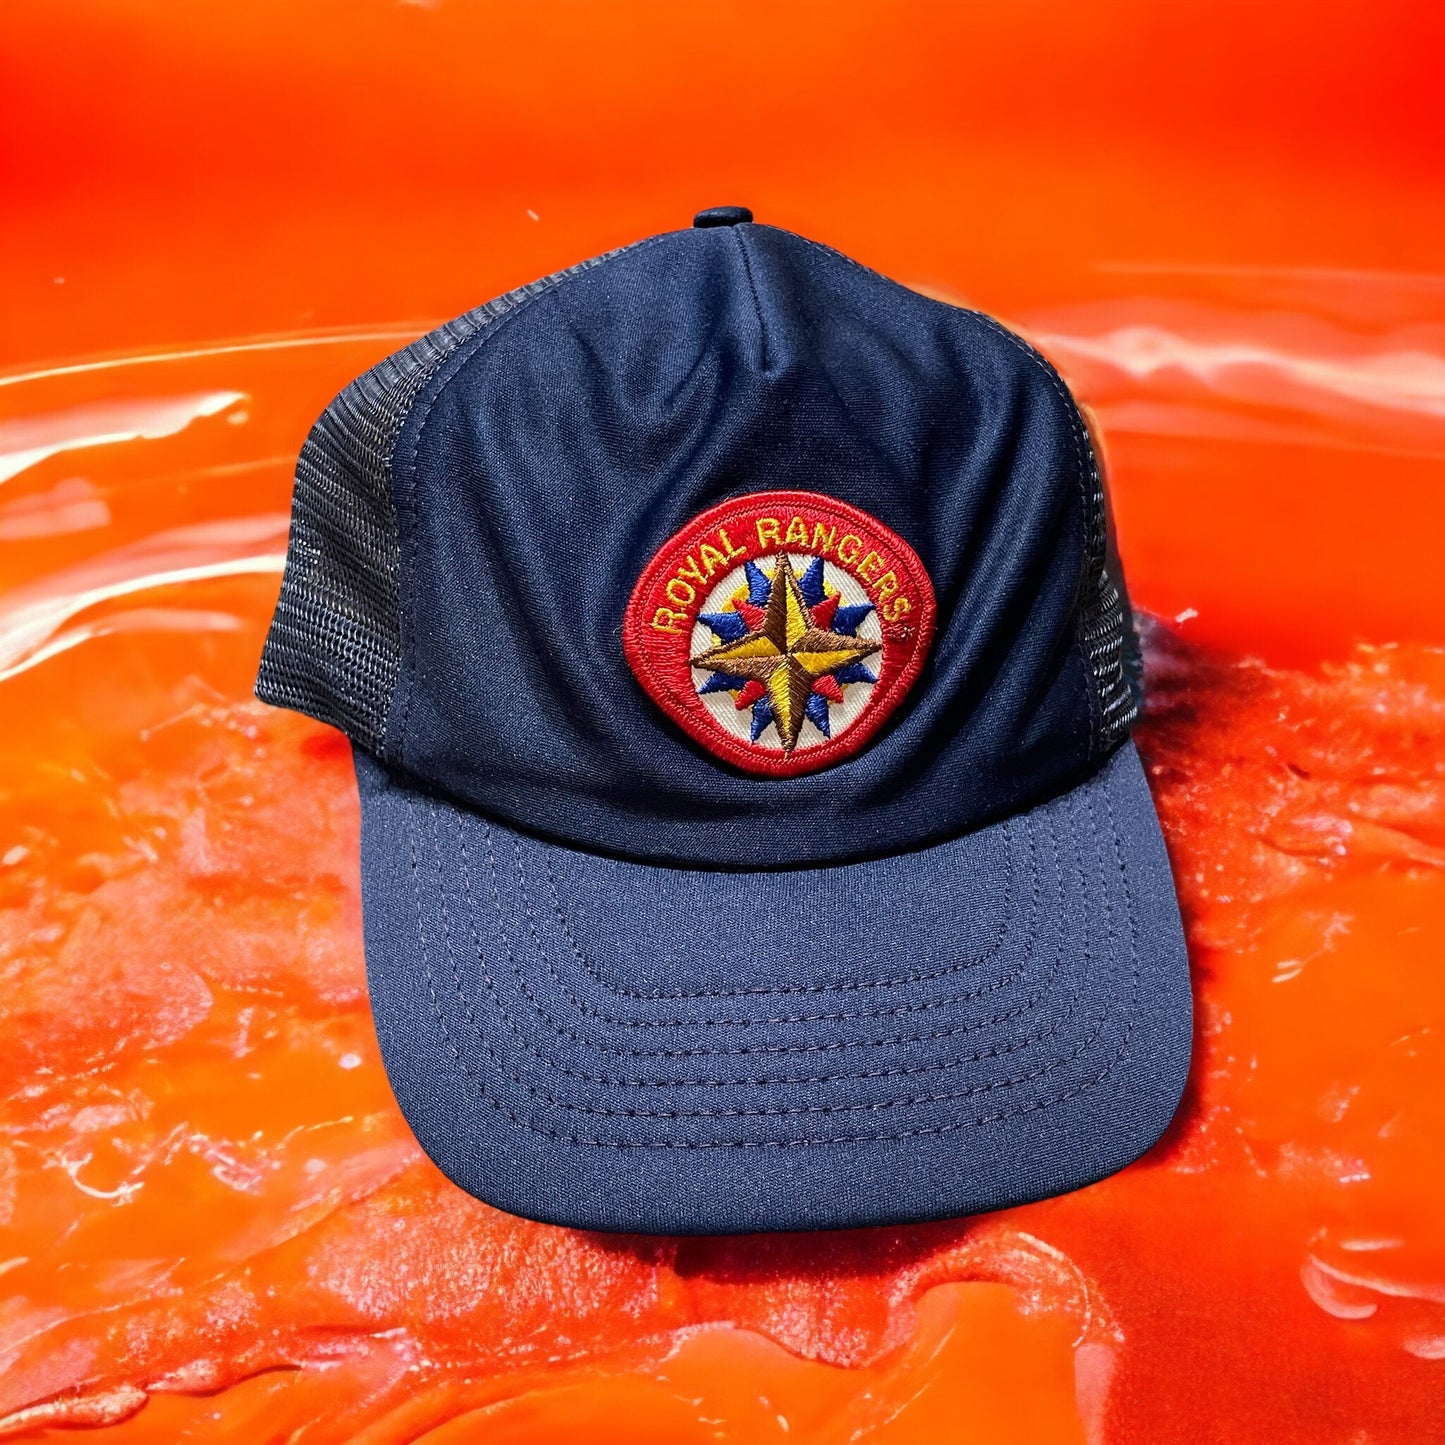 Royal Rangers Vintage Cap - Premium  from Feu de Dieu - Just $24.99! Shop now at Feu de Dieu